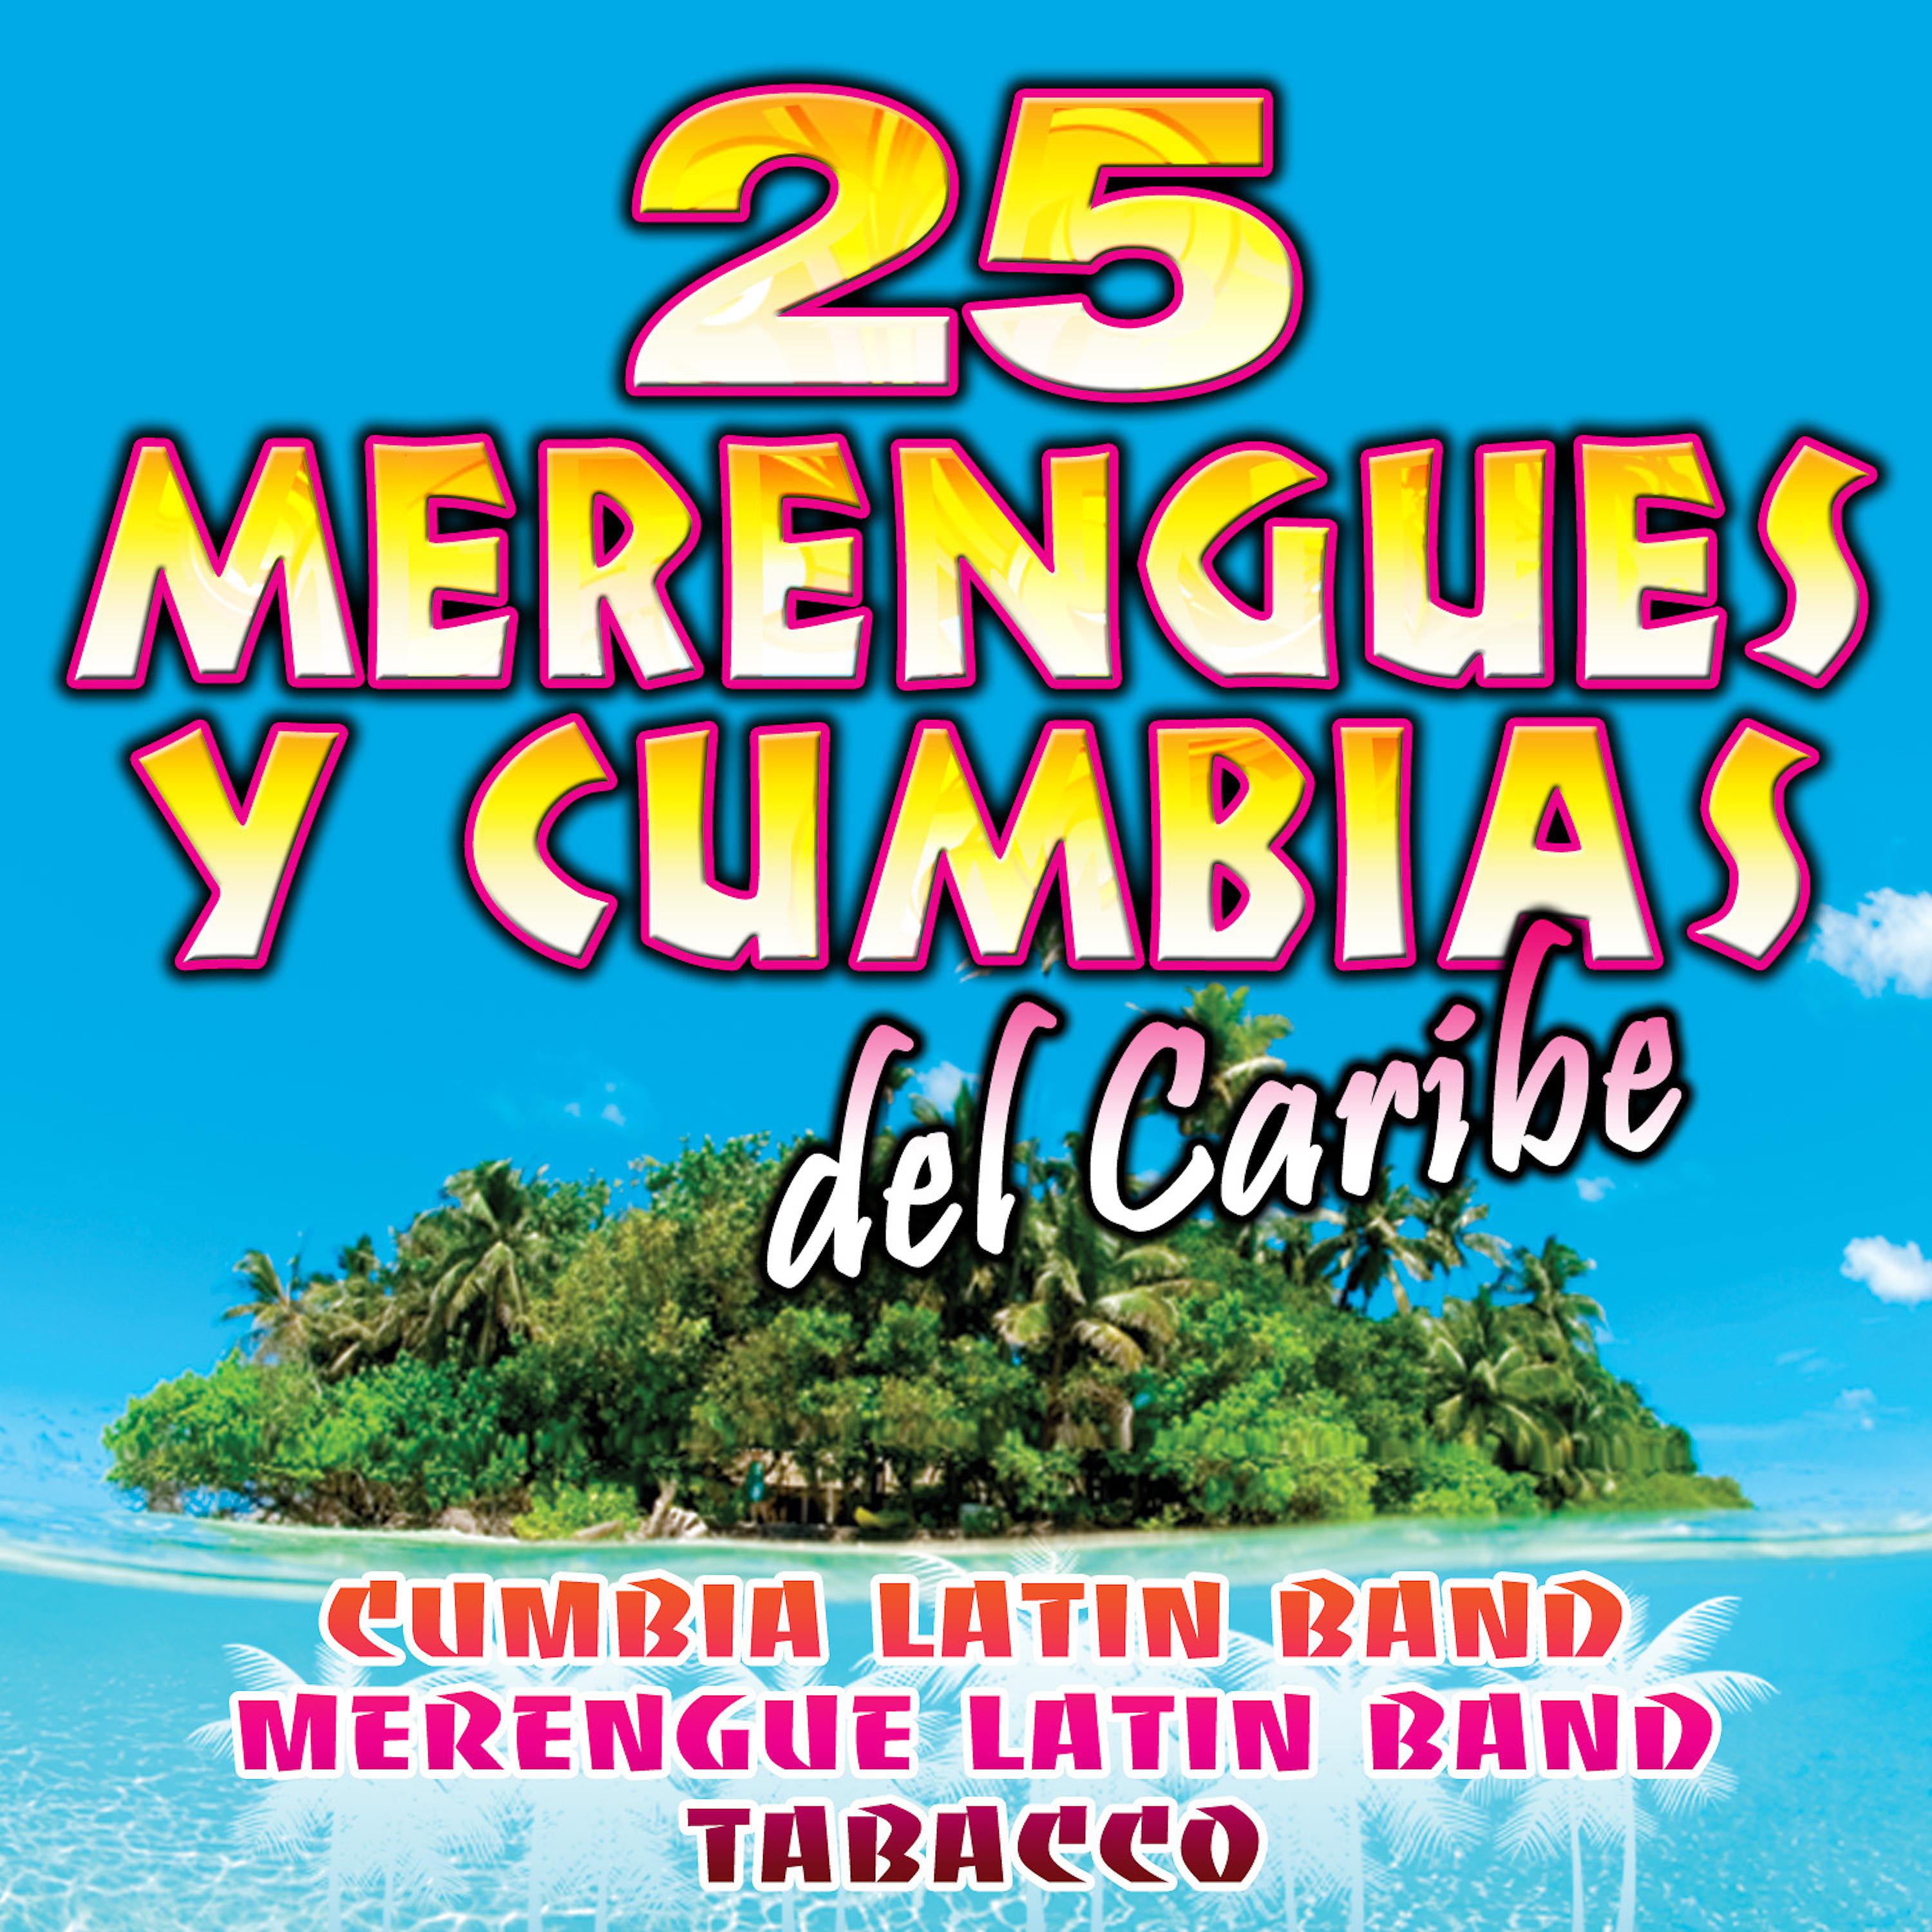 Постер альбома Merengues & Cumbias Del Caribe